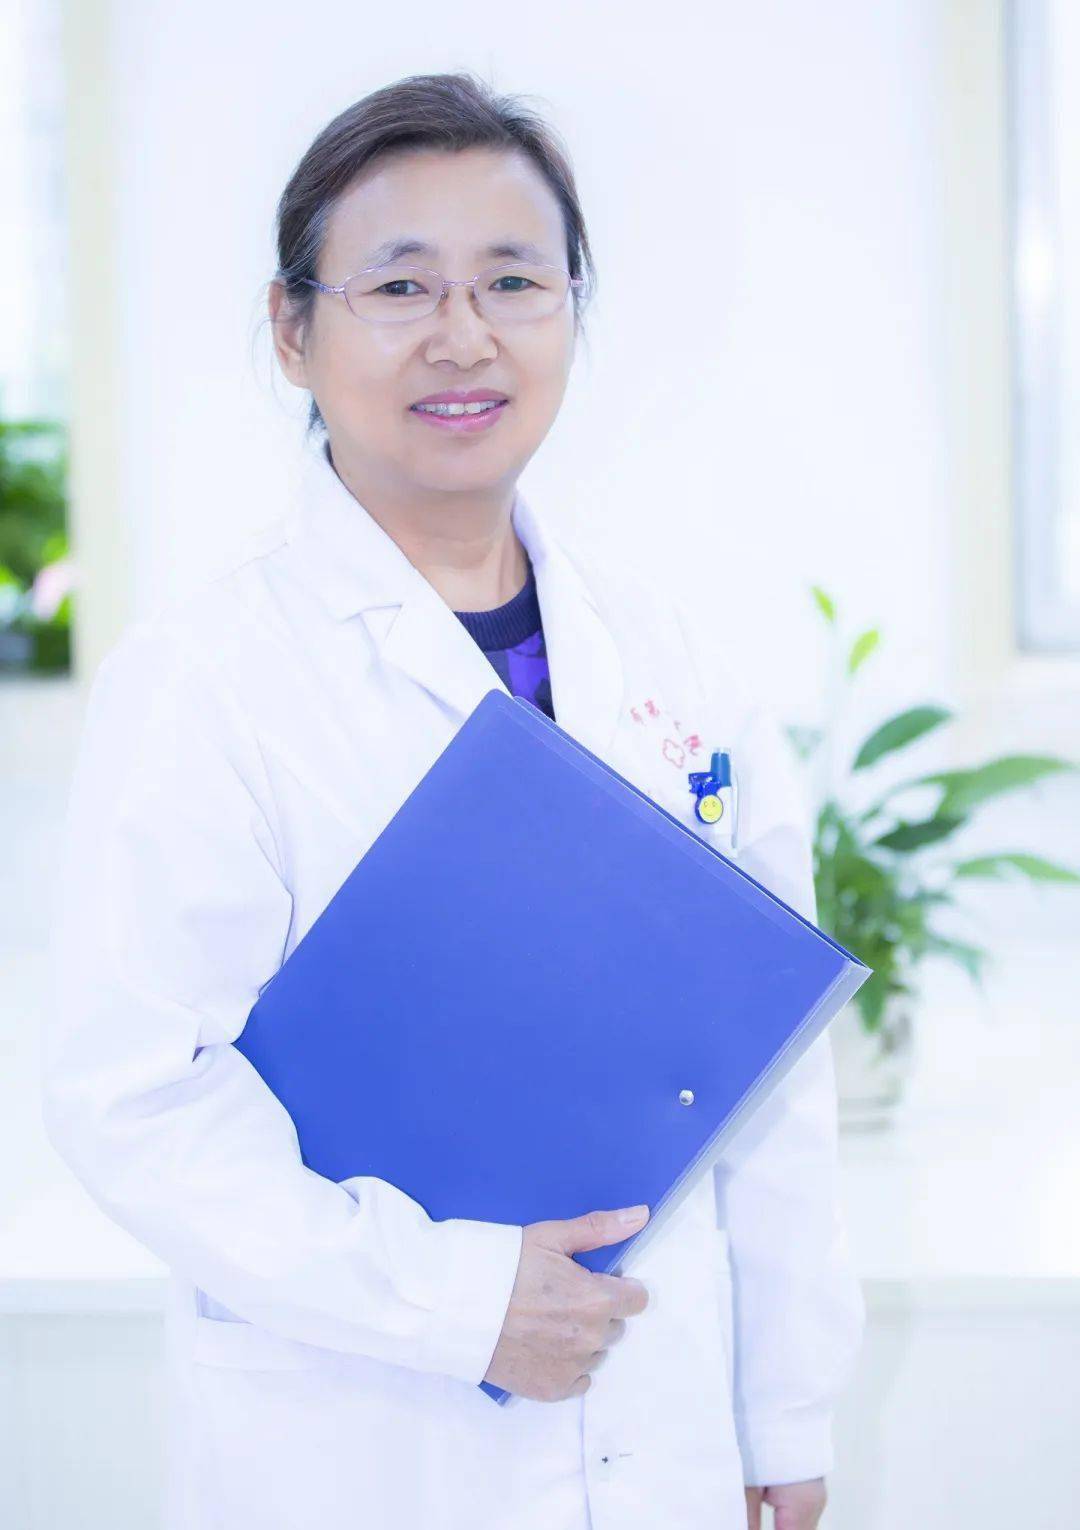 渭南市第二医院门诊出诊医师风采——【第一期】返聘专家